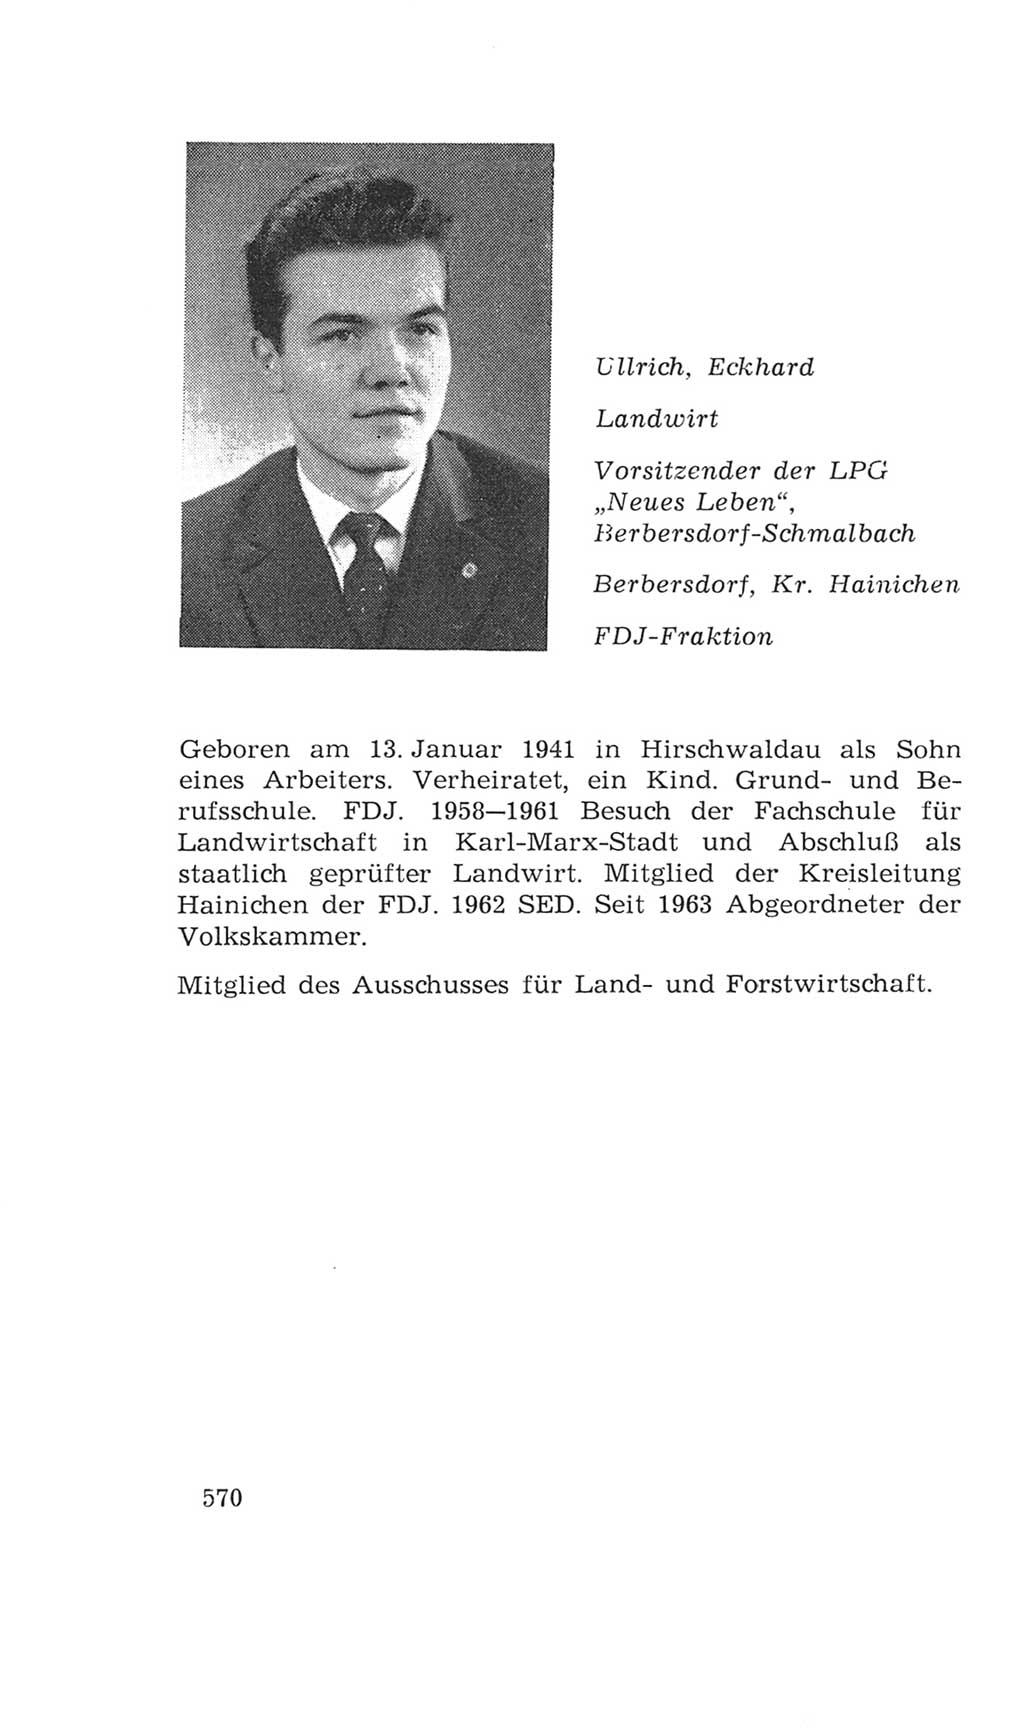 Volkskammer (VK) der Deutschen Demokratischen Republik (DDR), 4. Wahlperiode 1963-1967, Seite 570 (VK. DDR 4. WP. 1963-1967, S. 570)